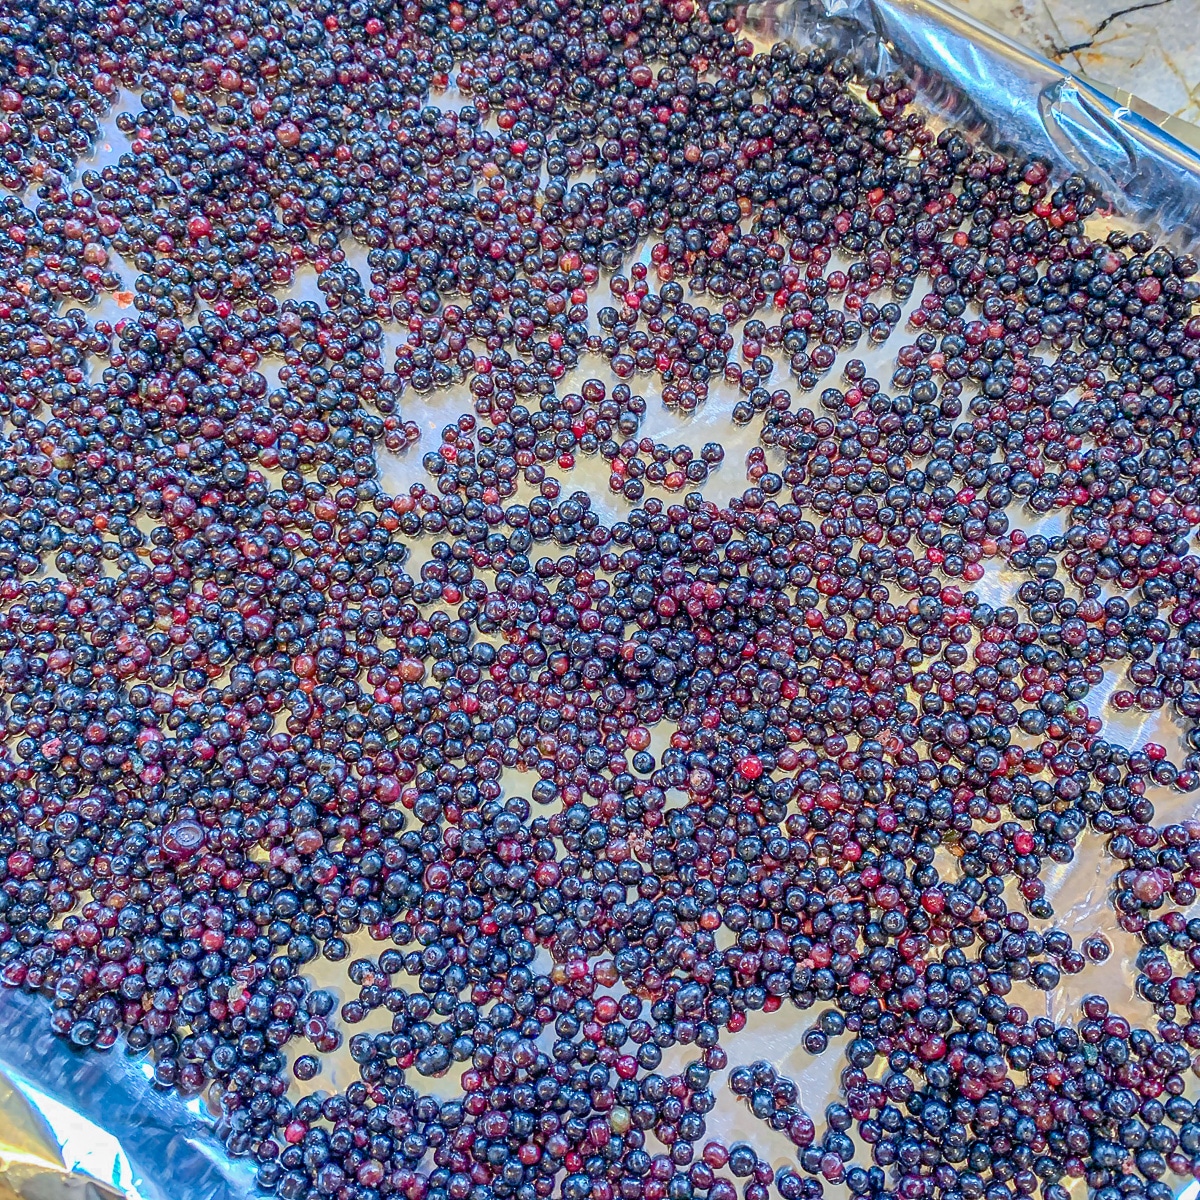 elderberries on a tray